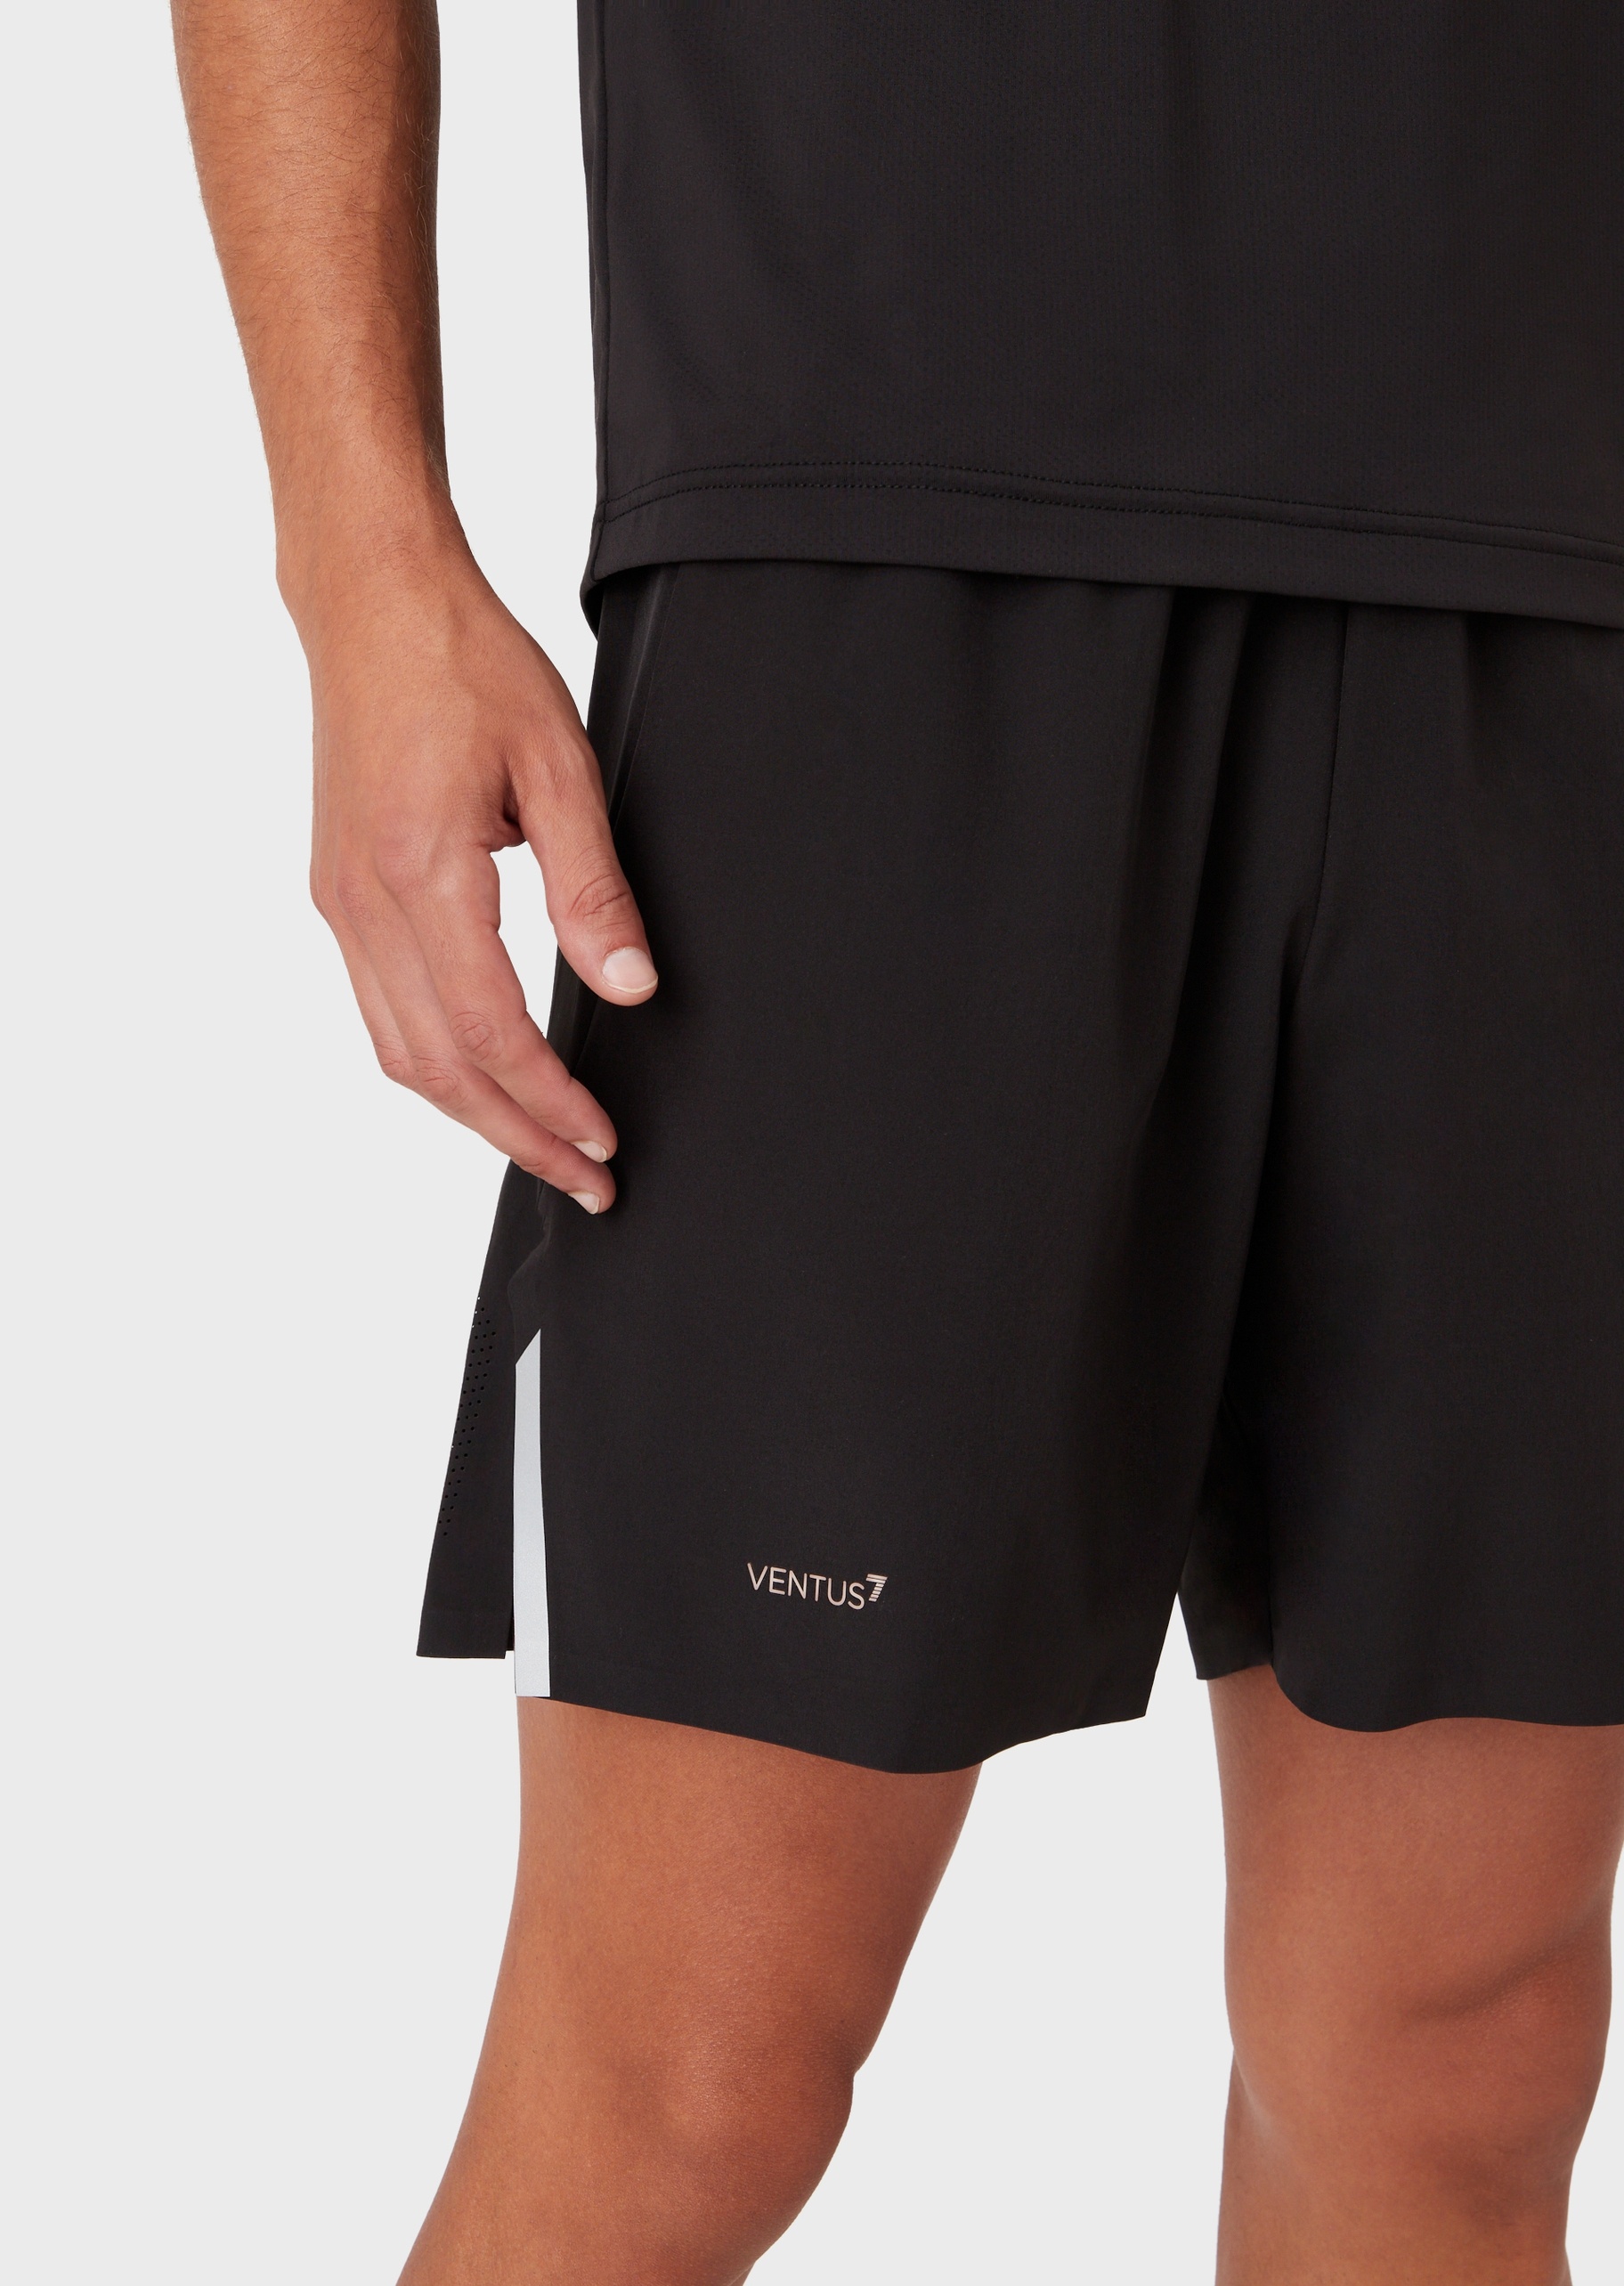 EA7 男士VENTUS 7宽松直筒网球运动短裤